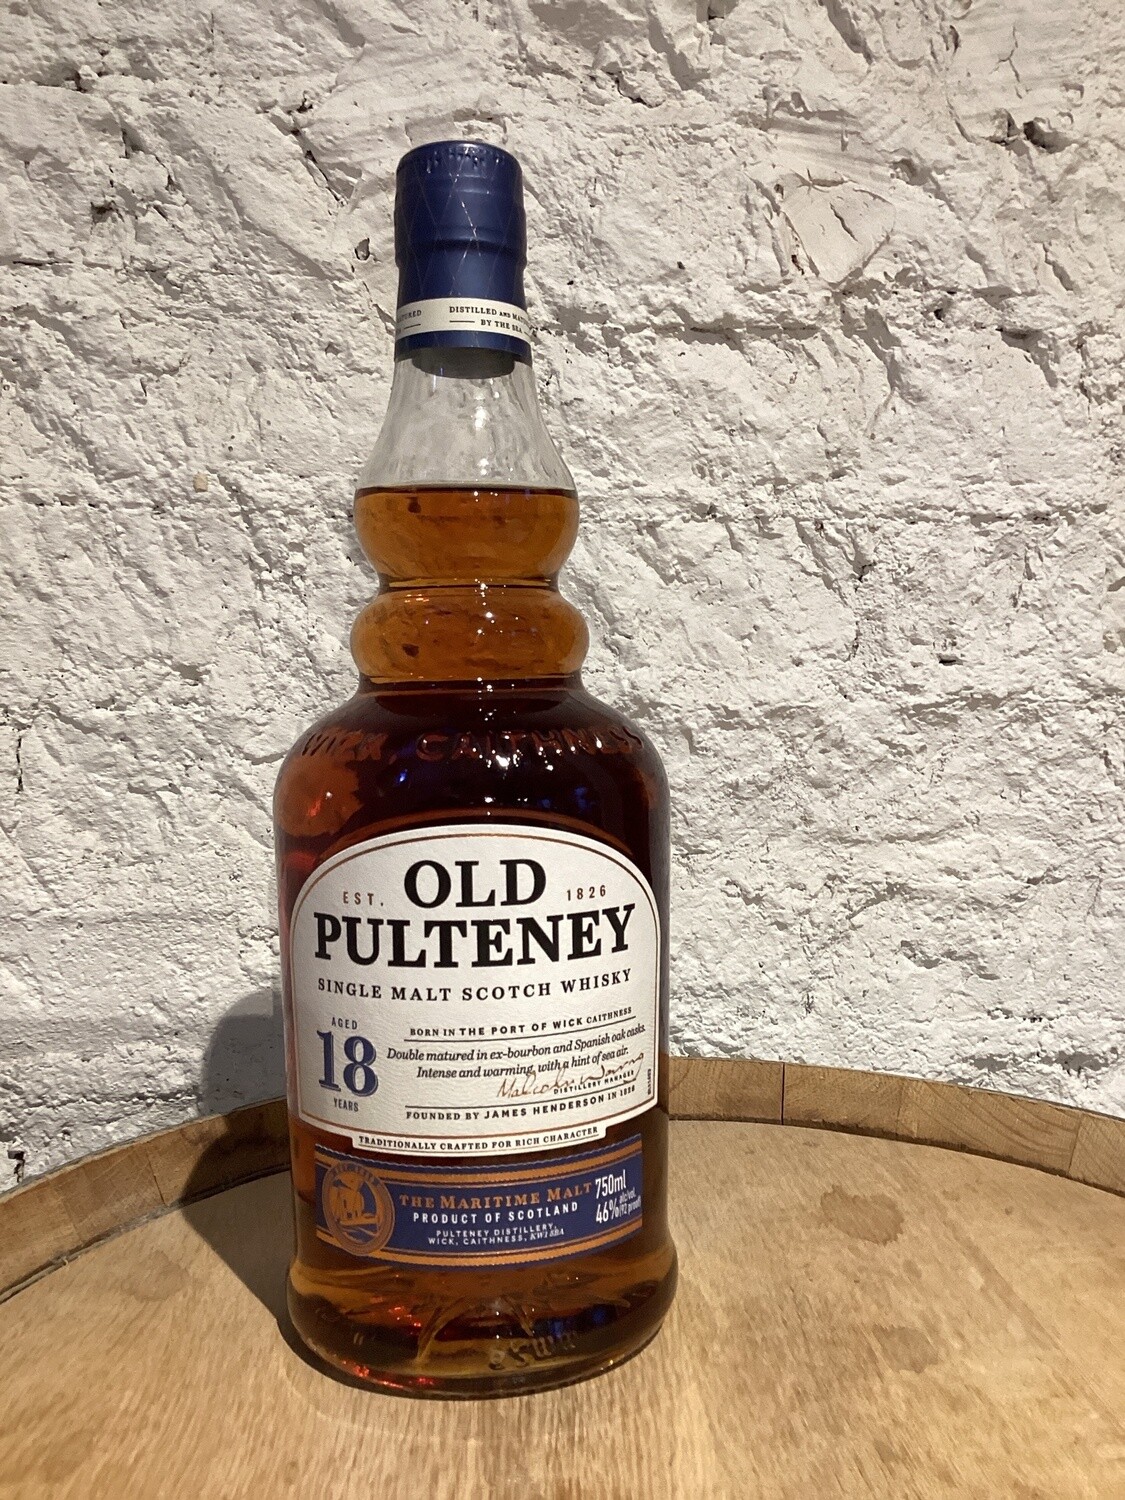 Old Pulteney 18 Year Old Single Malt Scotch Whisky Highlands, Scotland